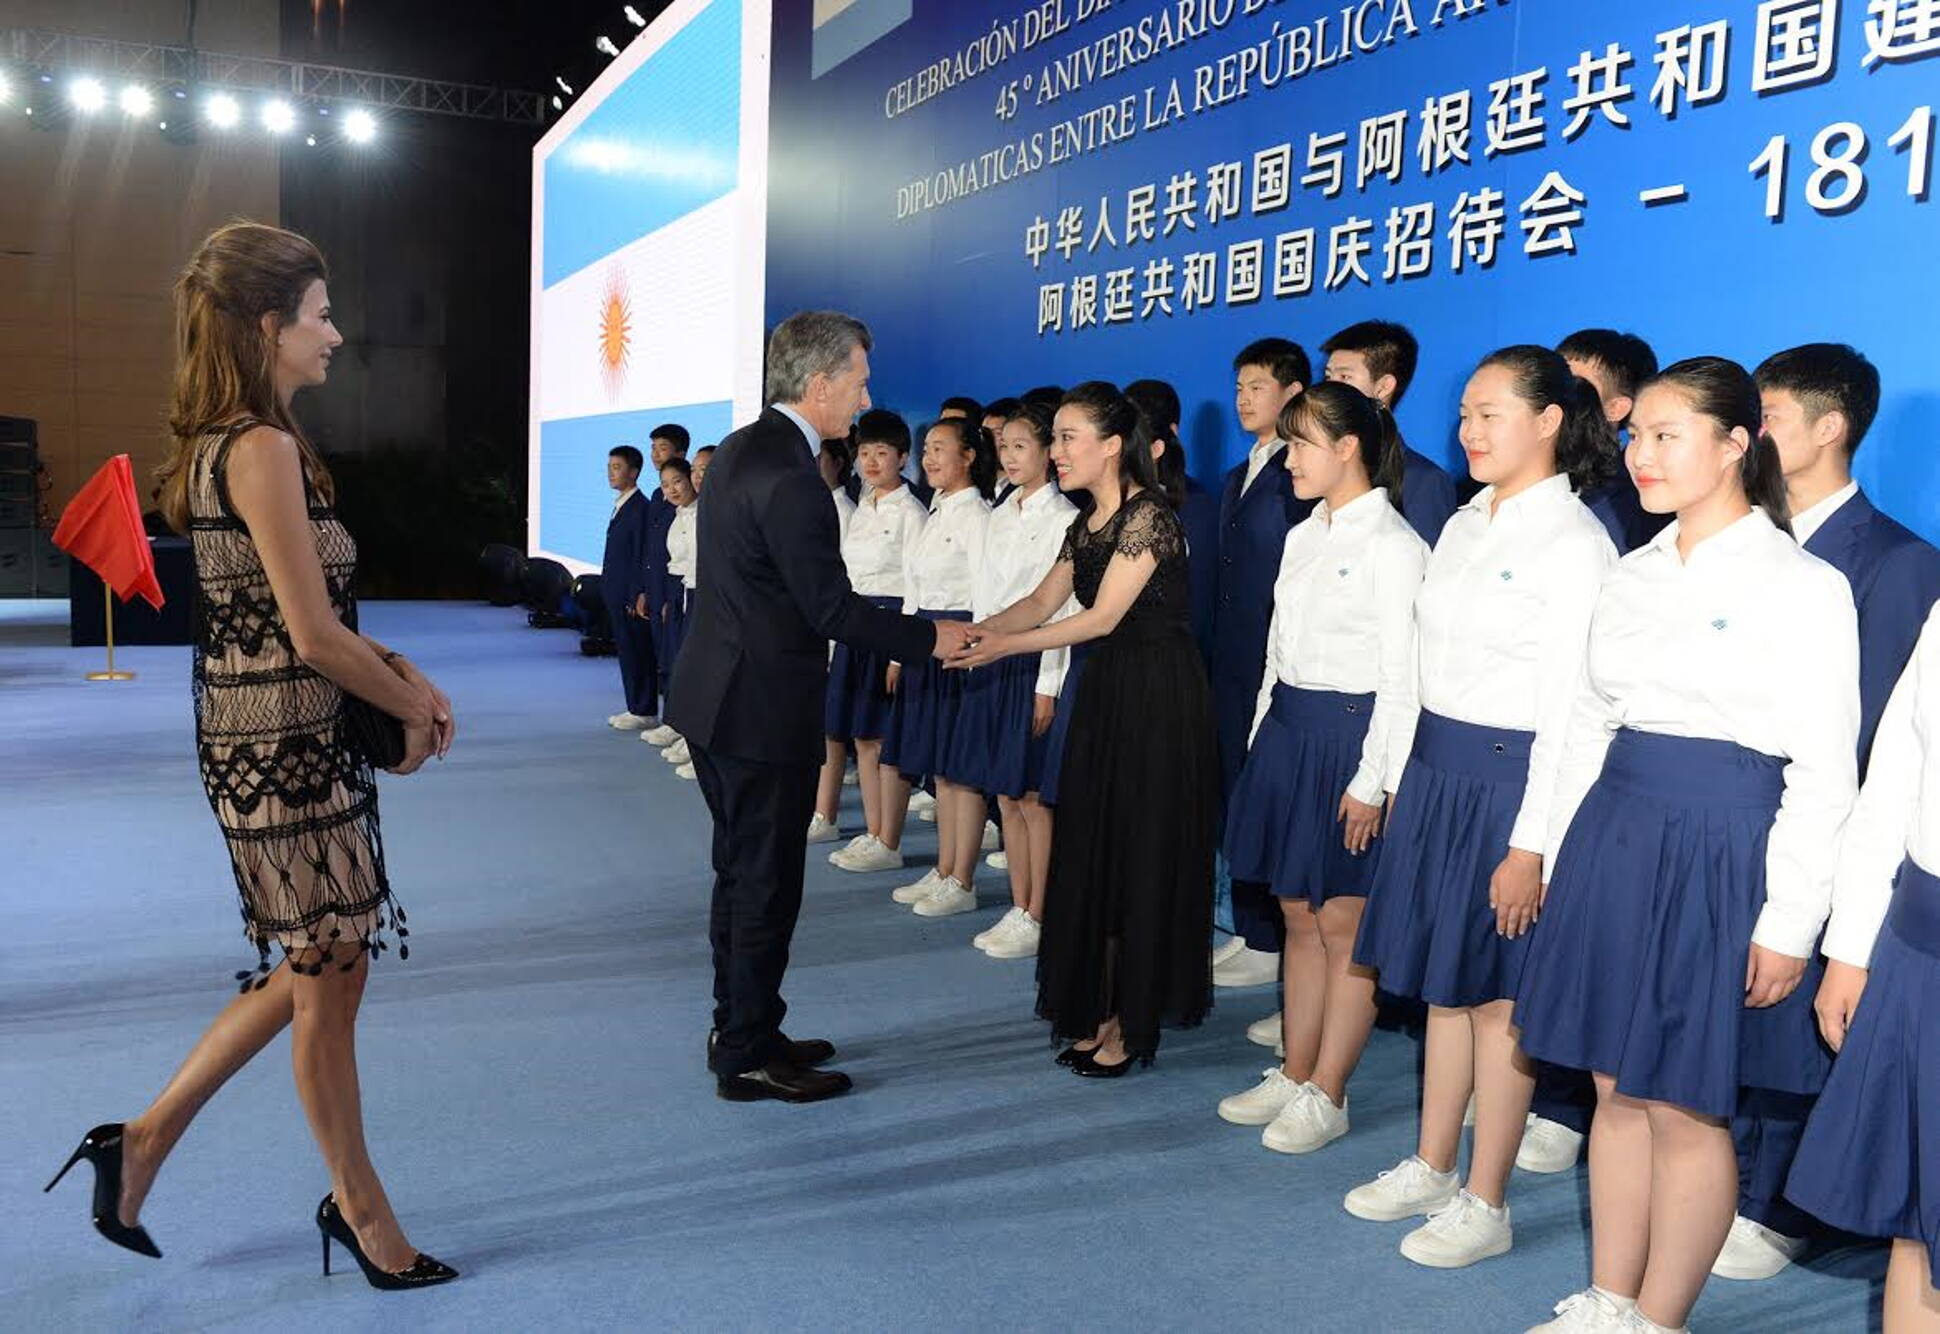 El Presidente y la Primera Dama, en el acto por el 45 aniversario de las relaciones entre la Argentina y China